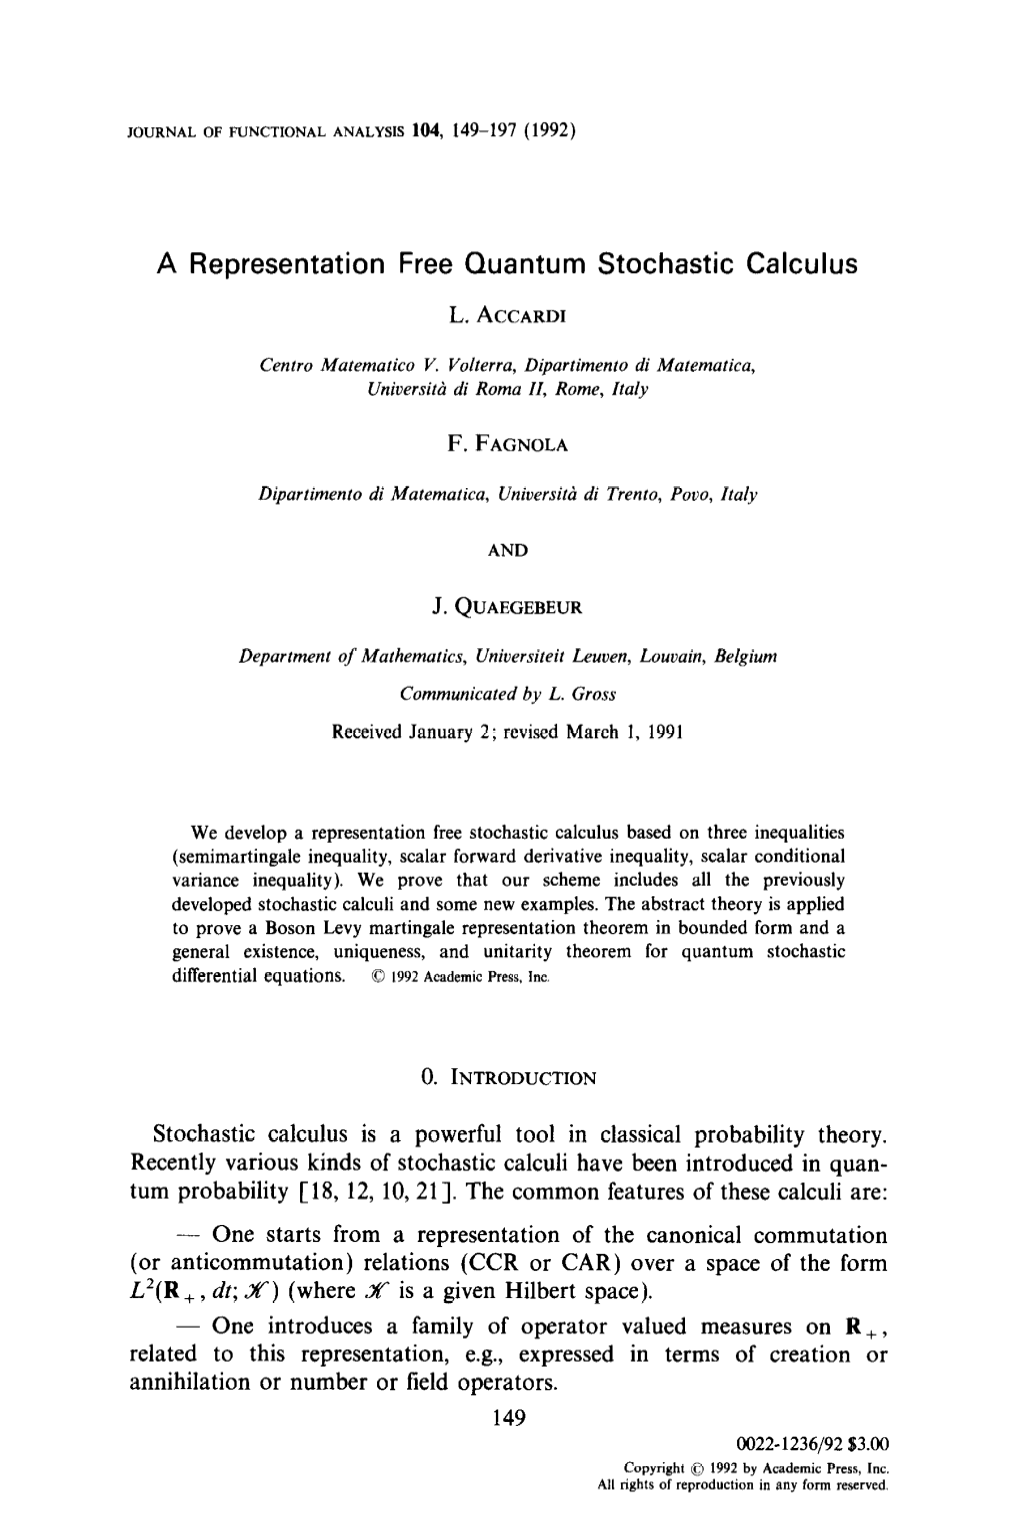 A Representation Free Quantum Stochastic Calculus